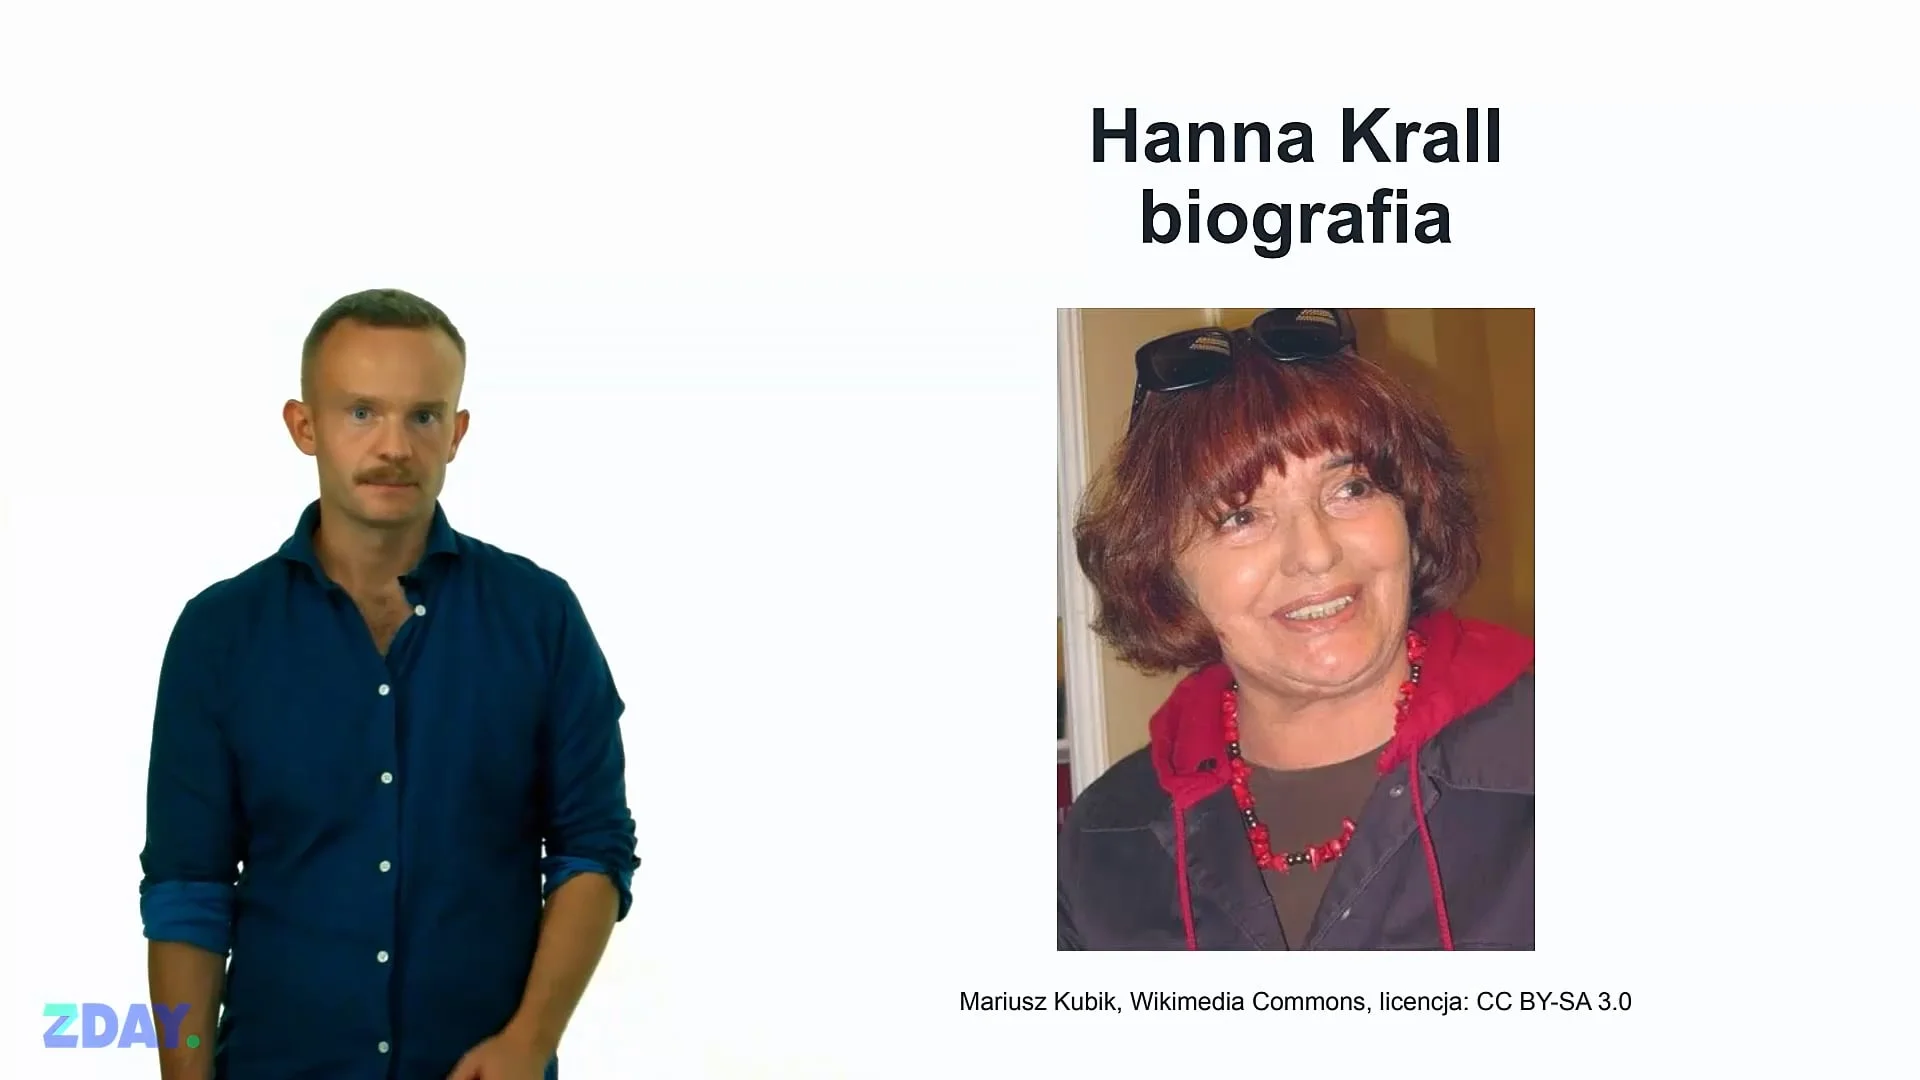 Miniaturka materiału wideo na temat: Hanna Krall – o autorze. Kliknij, aby obejrzeć materiał.